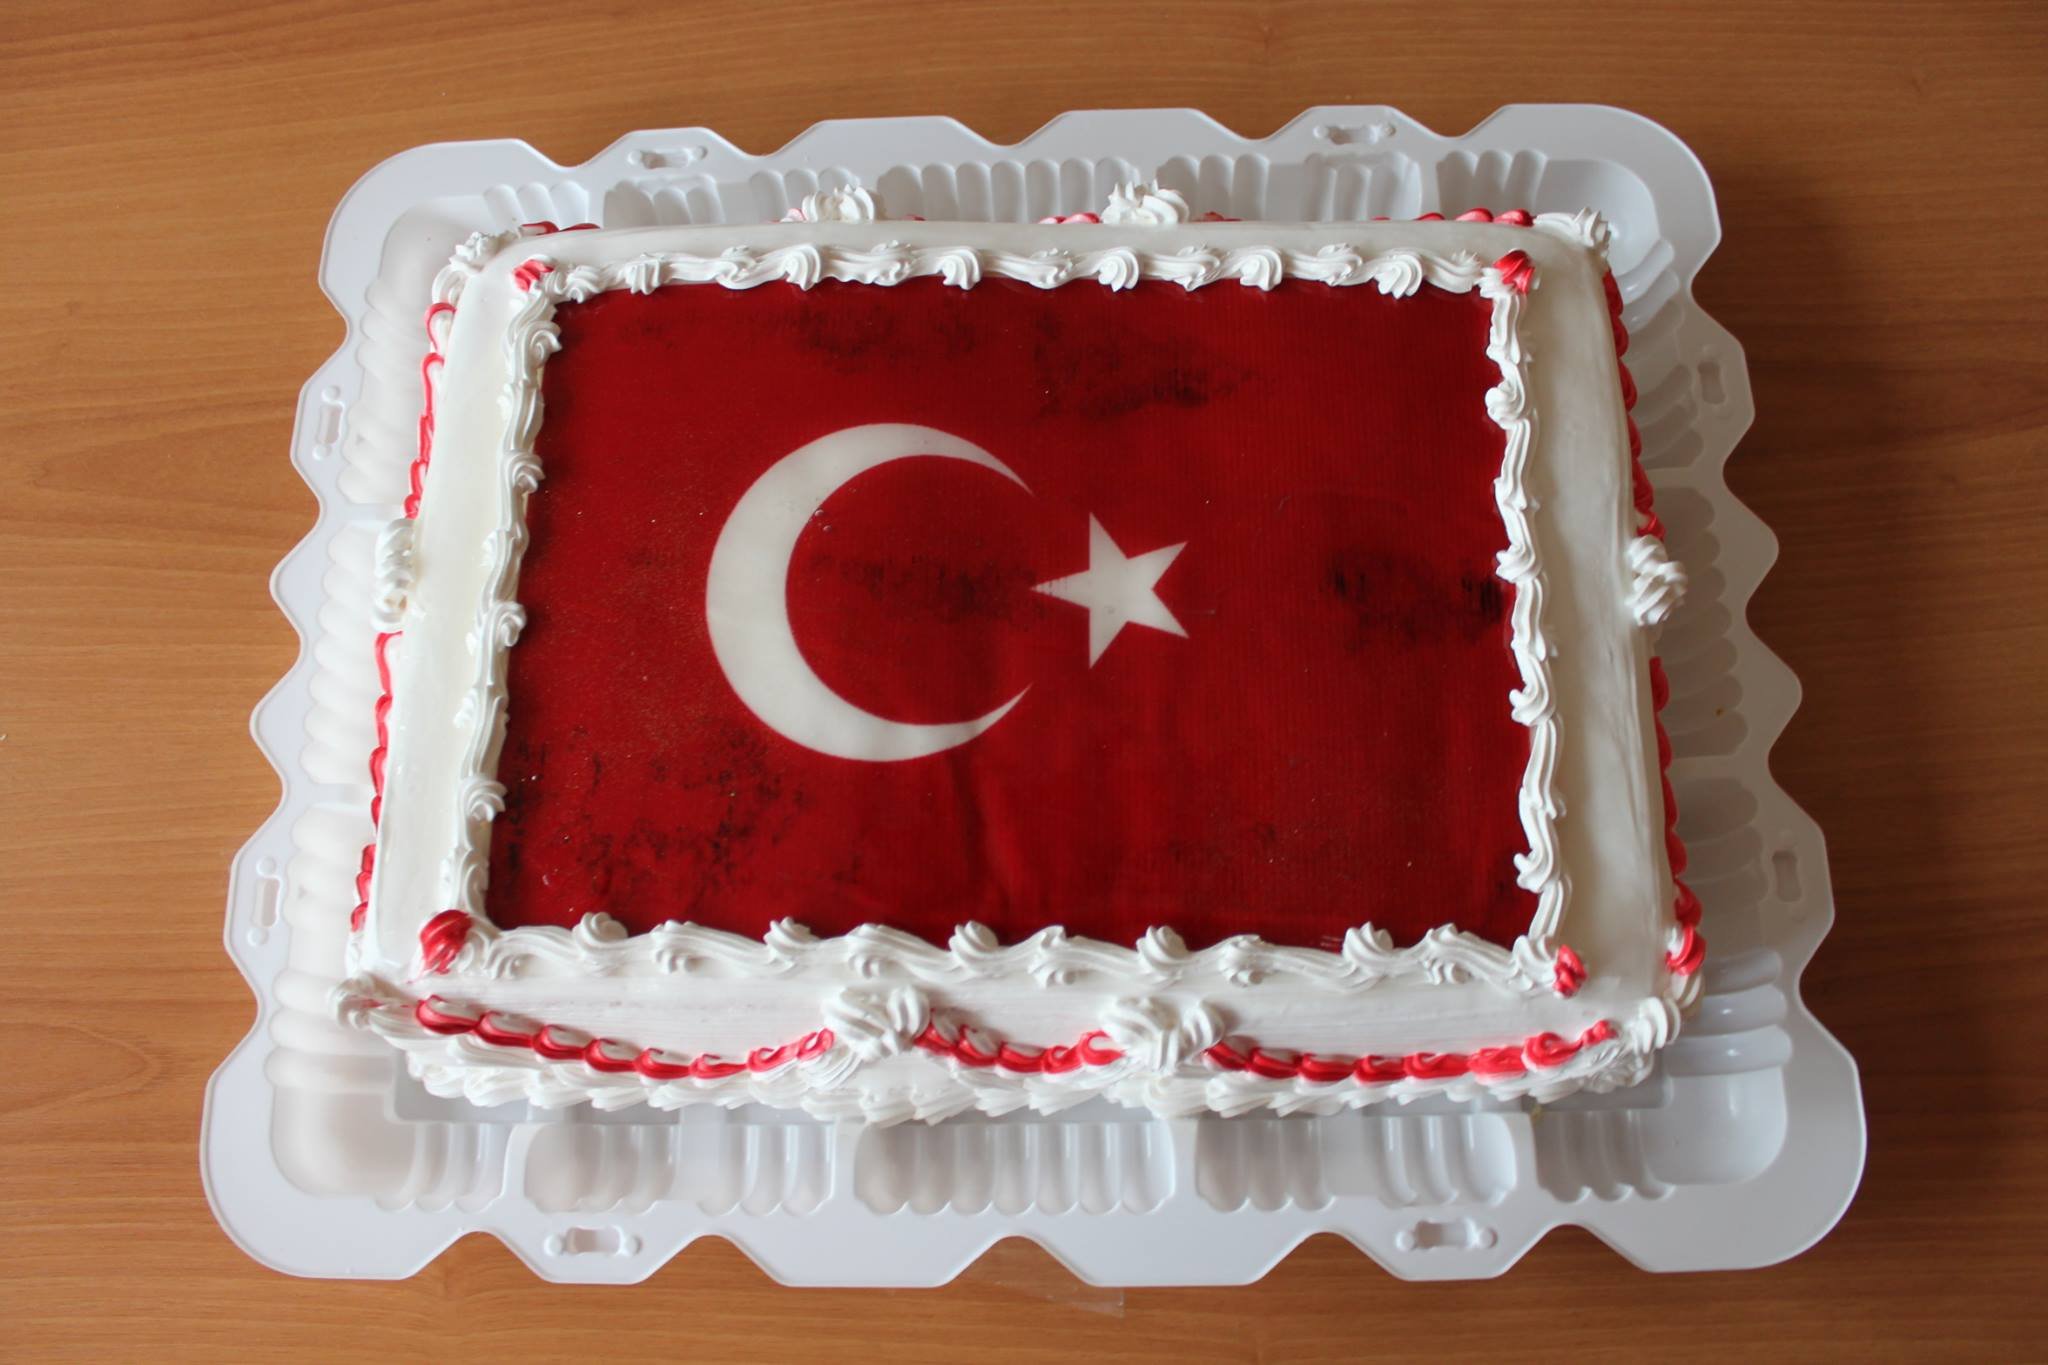 Поздравляйте с днем рождения на турецком как Бурак Озчивит